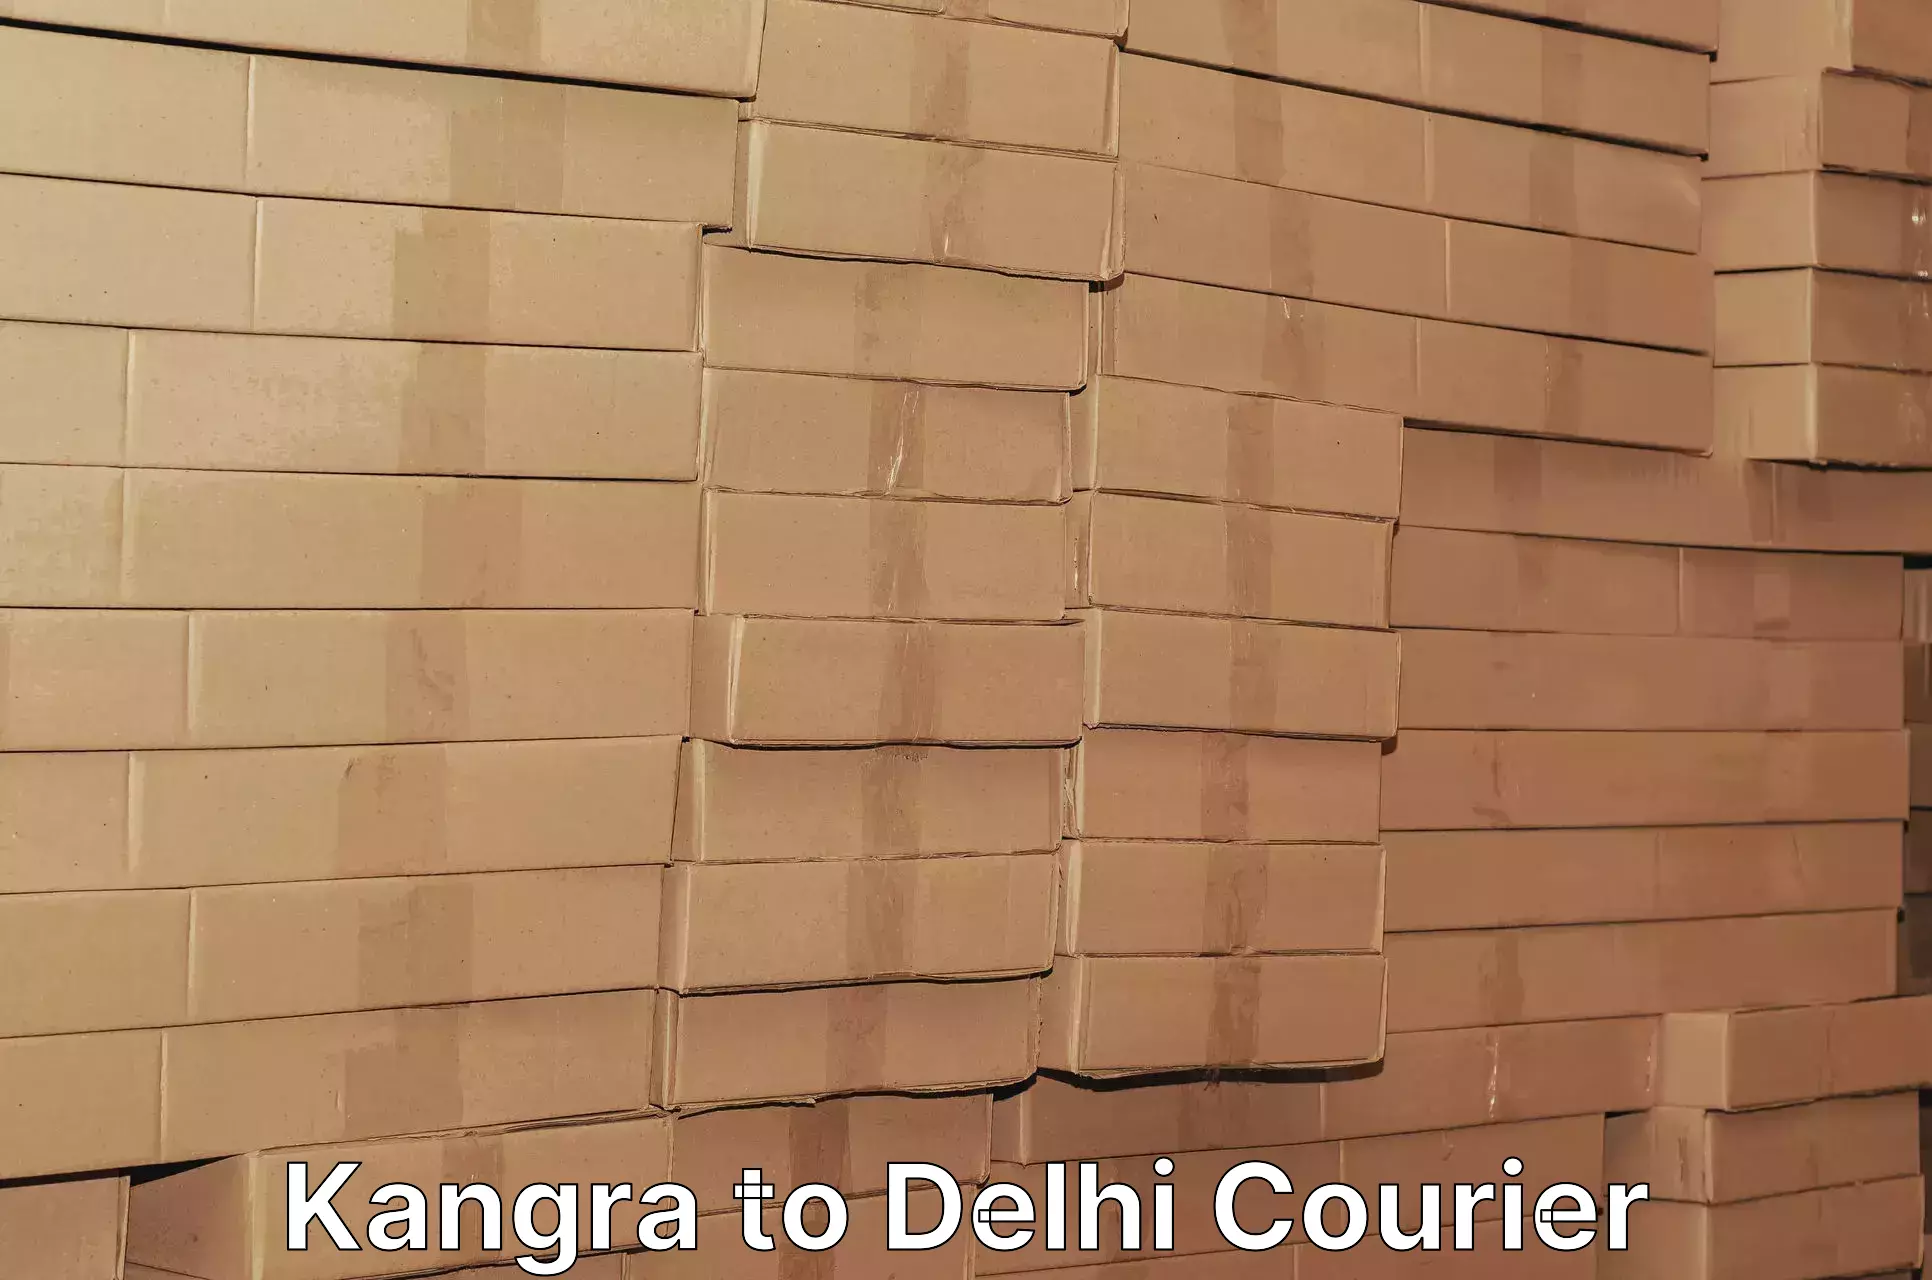 Cargo delivery service Kangra to Guru Gobind Singh Indraprastha University New Delhi